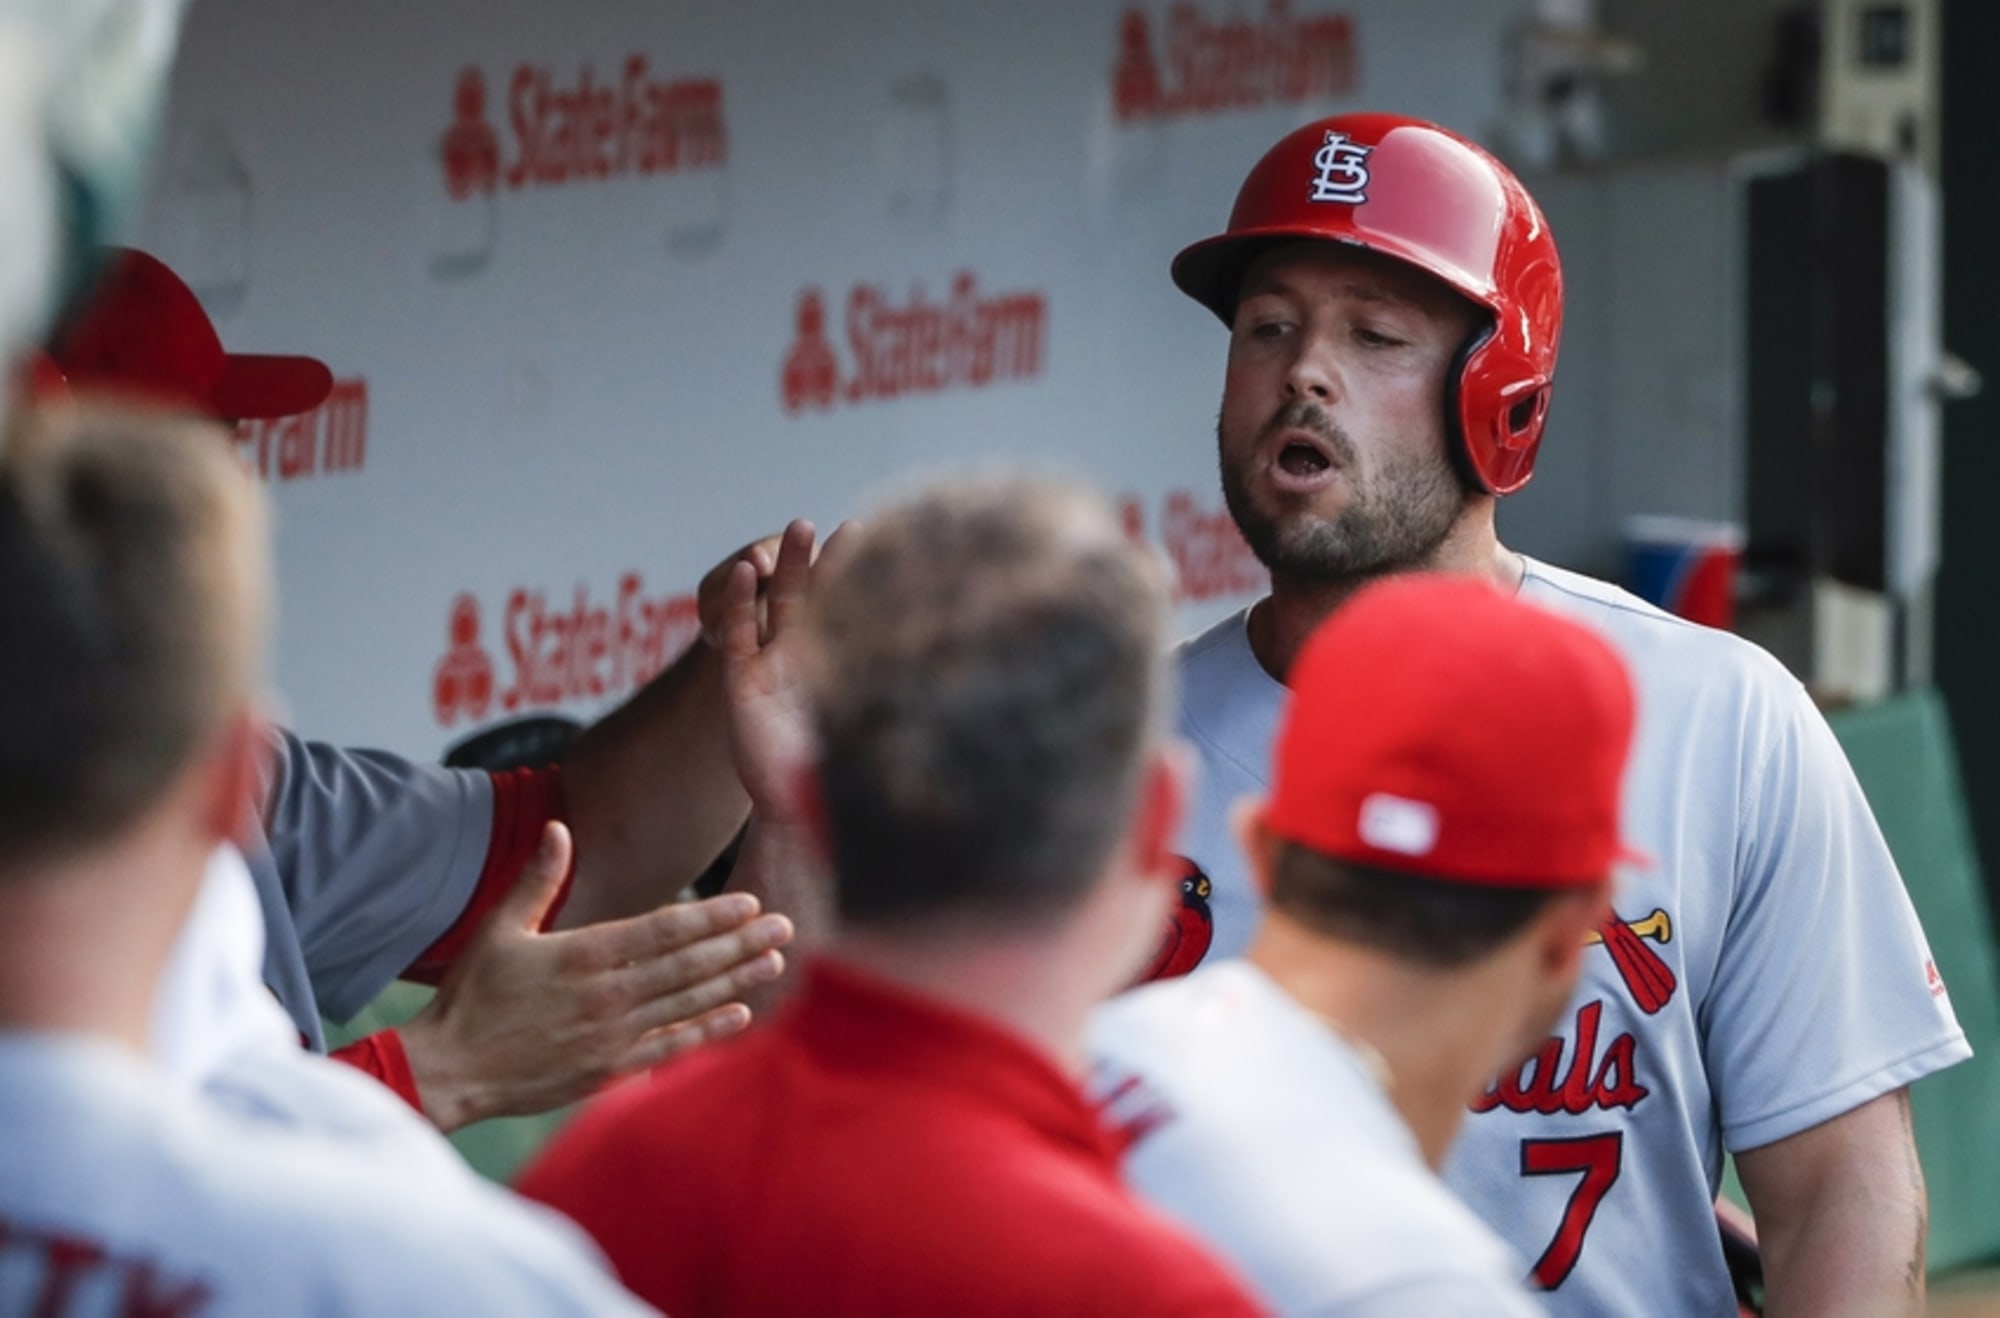 Matt Holliday's Cardinals career ends